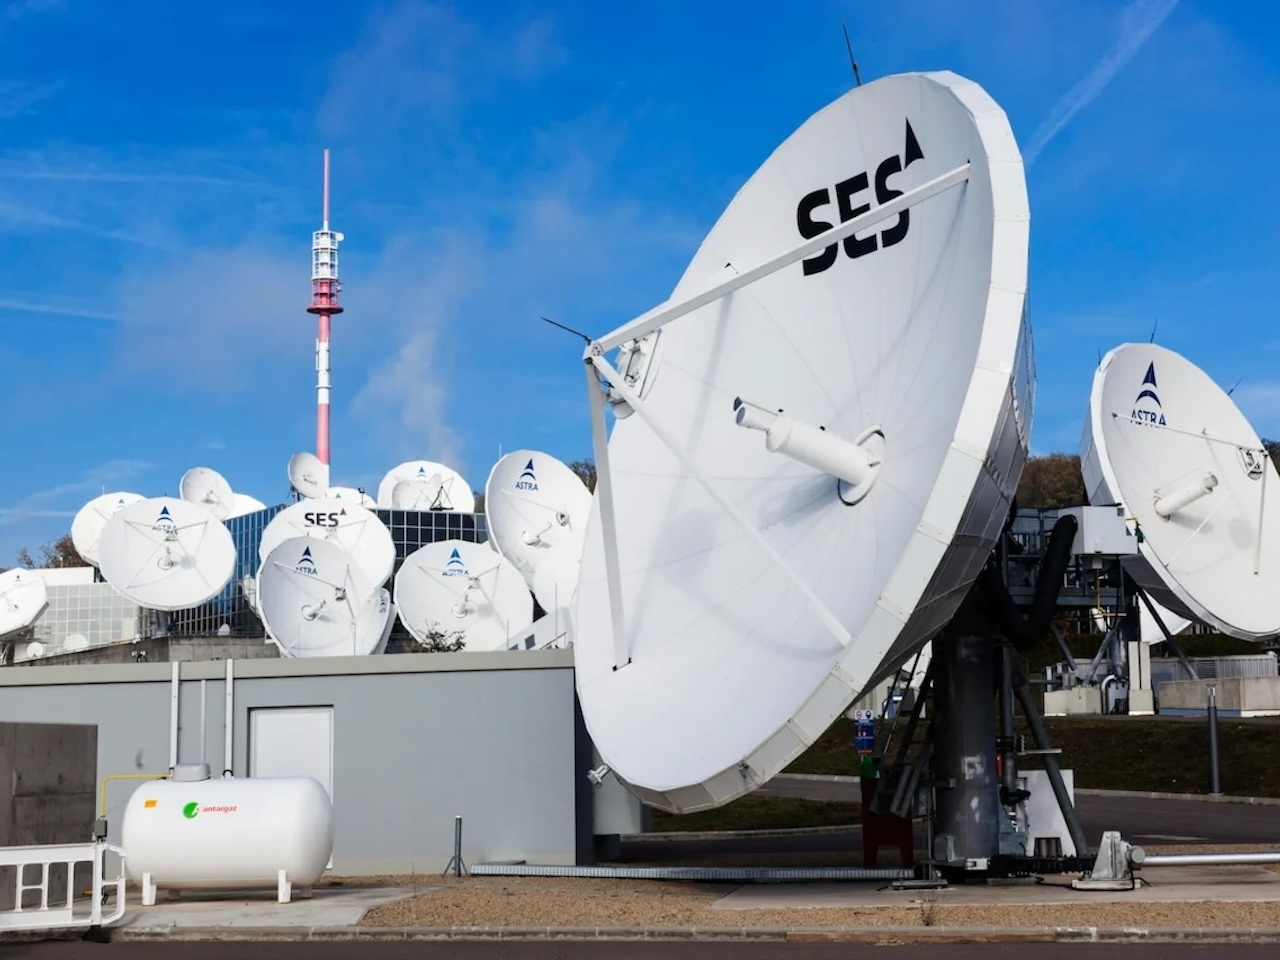 衛星通信のSES、インテルサットを31億ドルで買収--ビジネス競争が激化